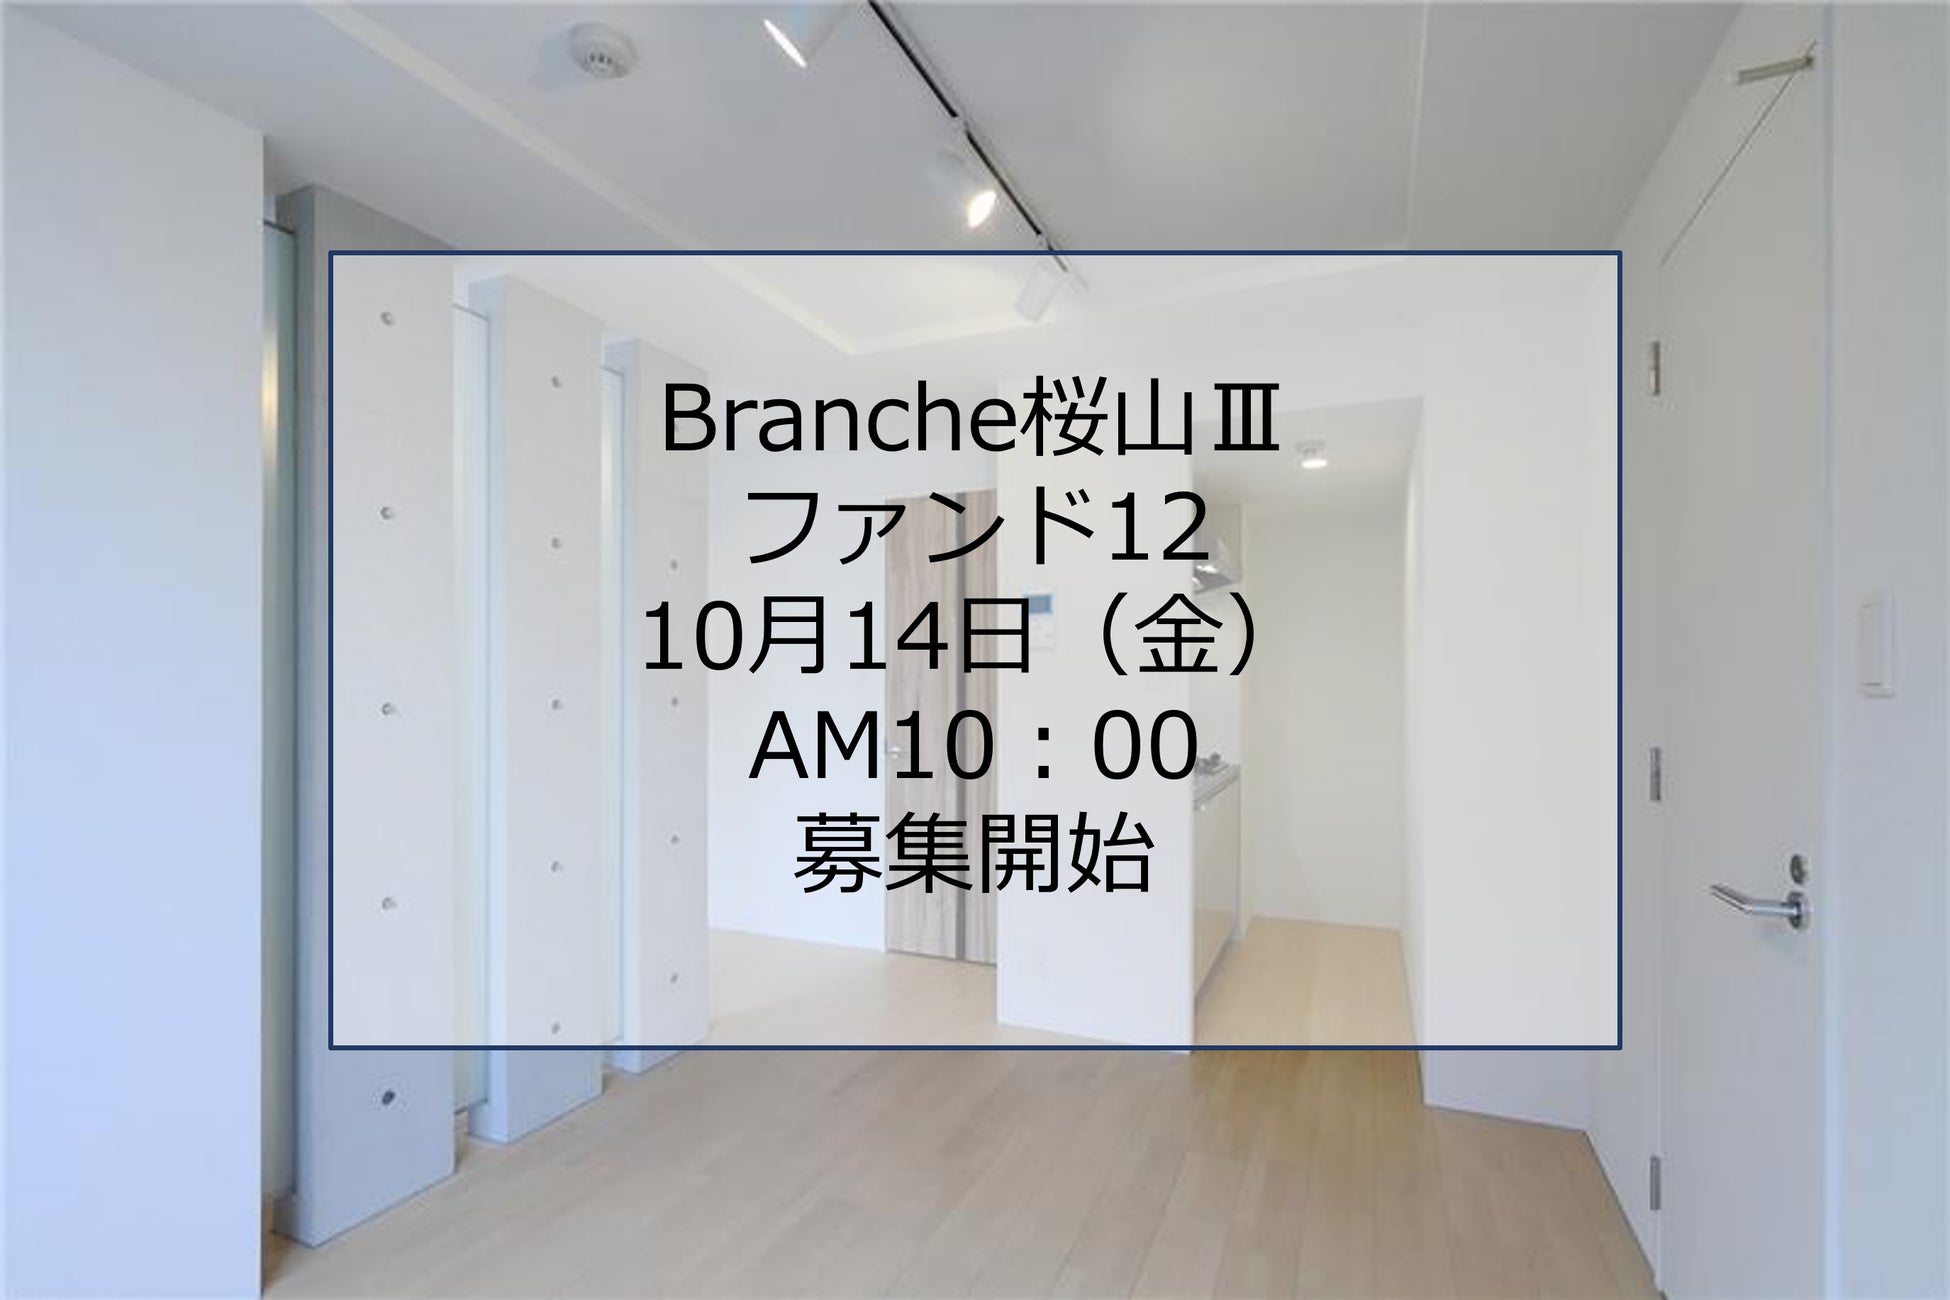 「Branche桜山Ⅲファンド12」募集開始！